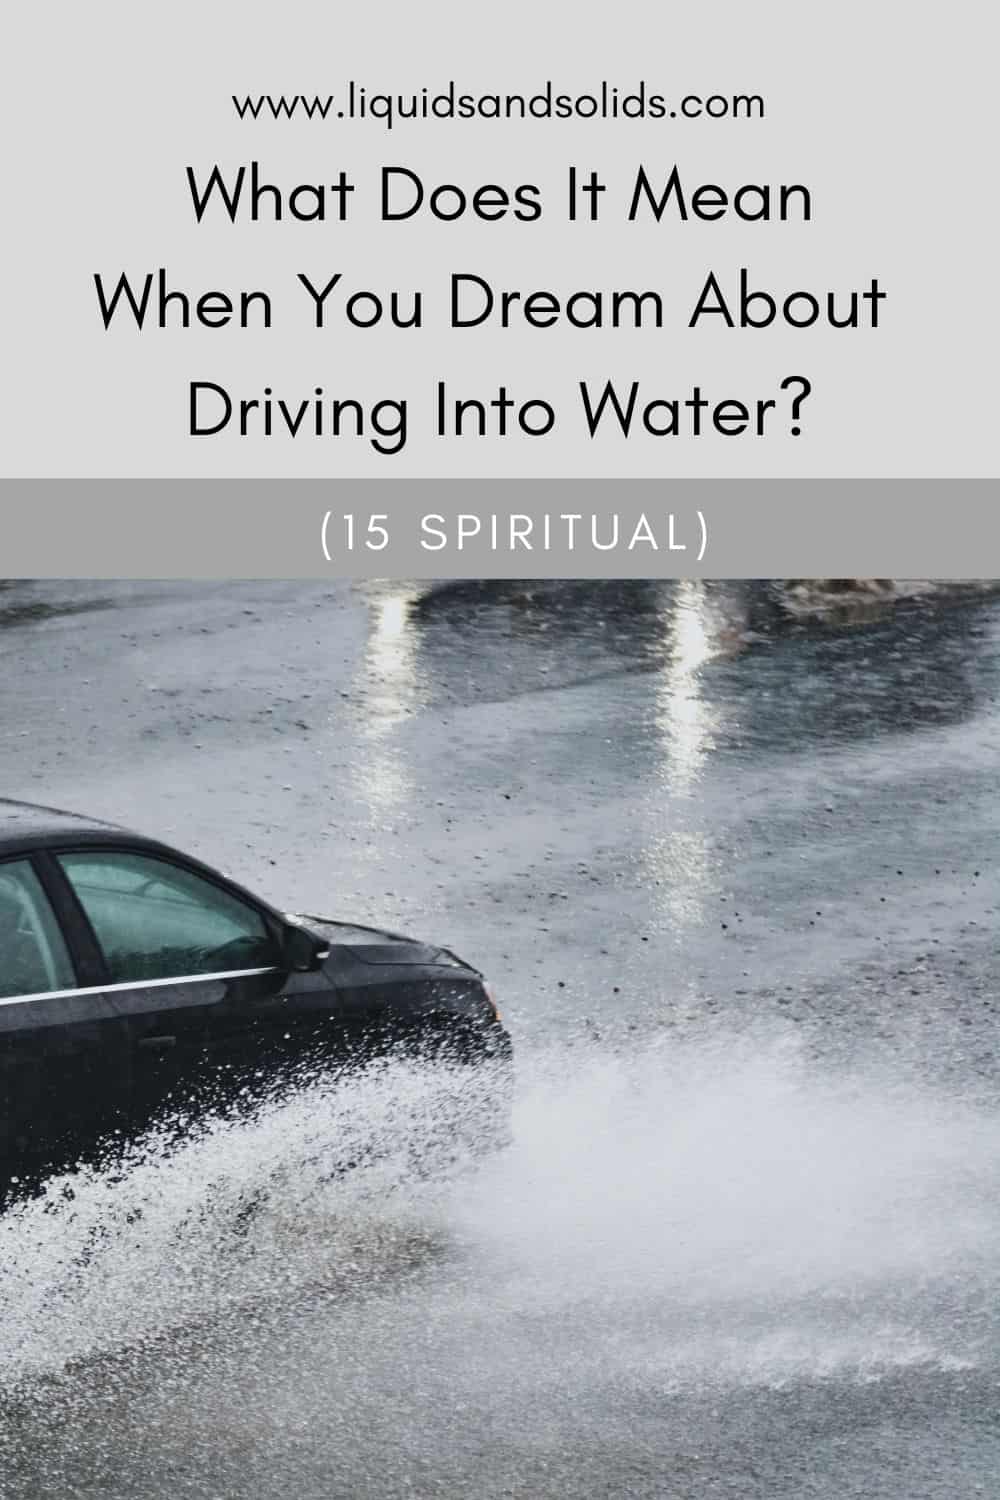  Drøm om at køre ind i vand? (15 spirituelle betydninger)